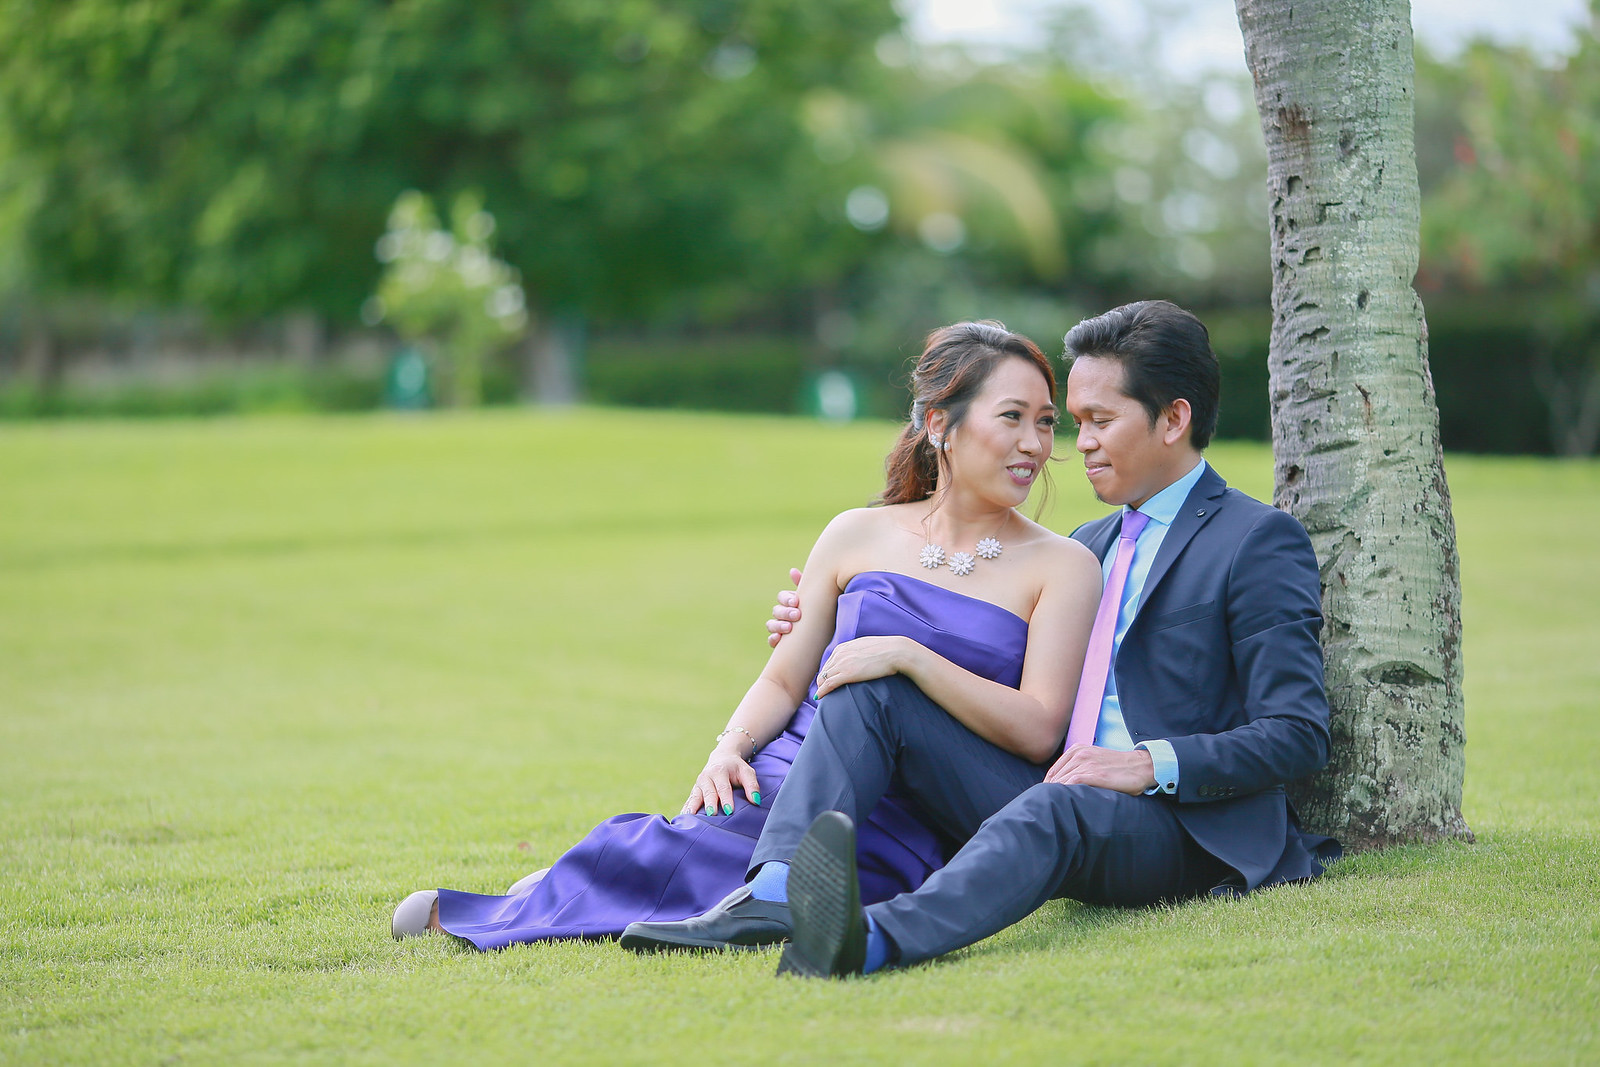 37162013535 030cad097b h - Shangrila Mactan Cebu Pre Wedding - Alex & Nina